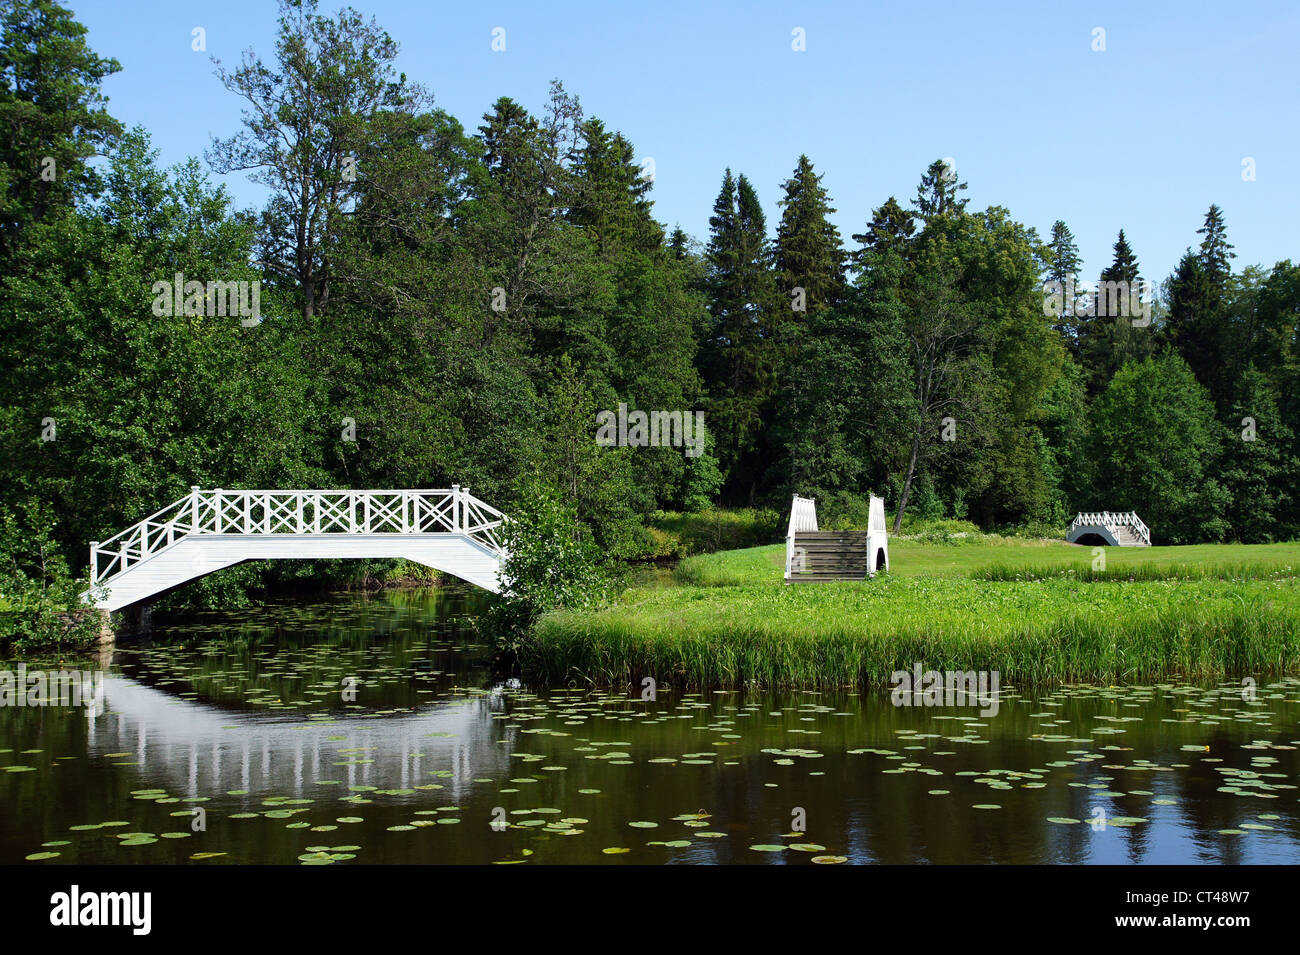 Die weiße Brücke auf einem Hintergrund von einem grünen Rasen und Bäumen Stockfoto